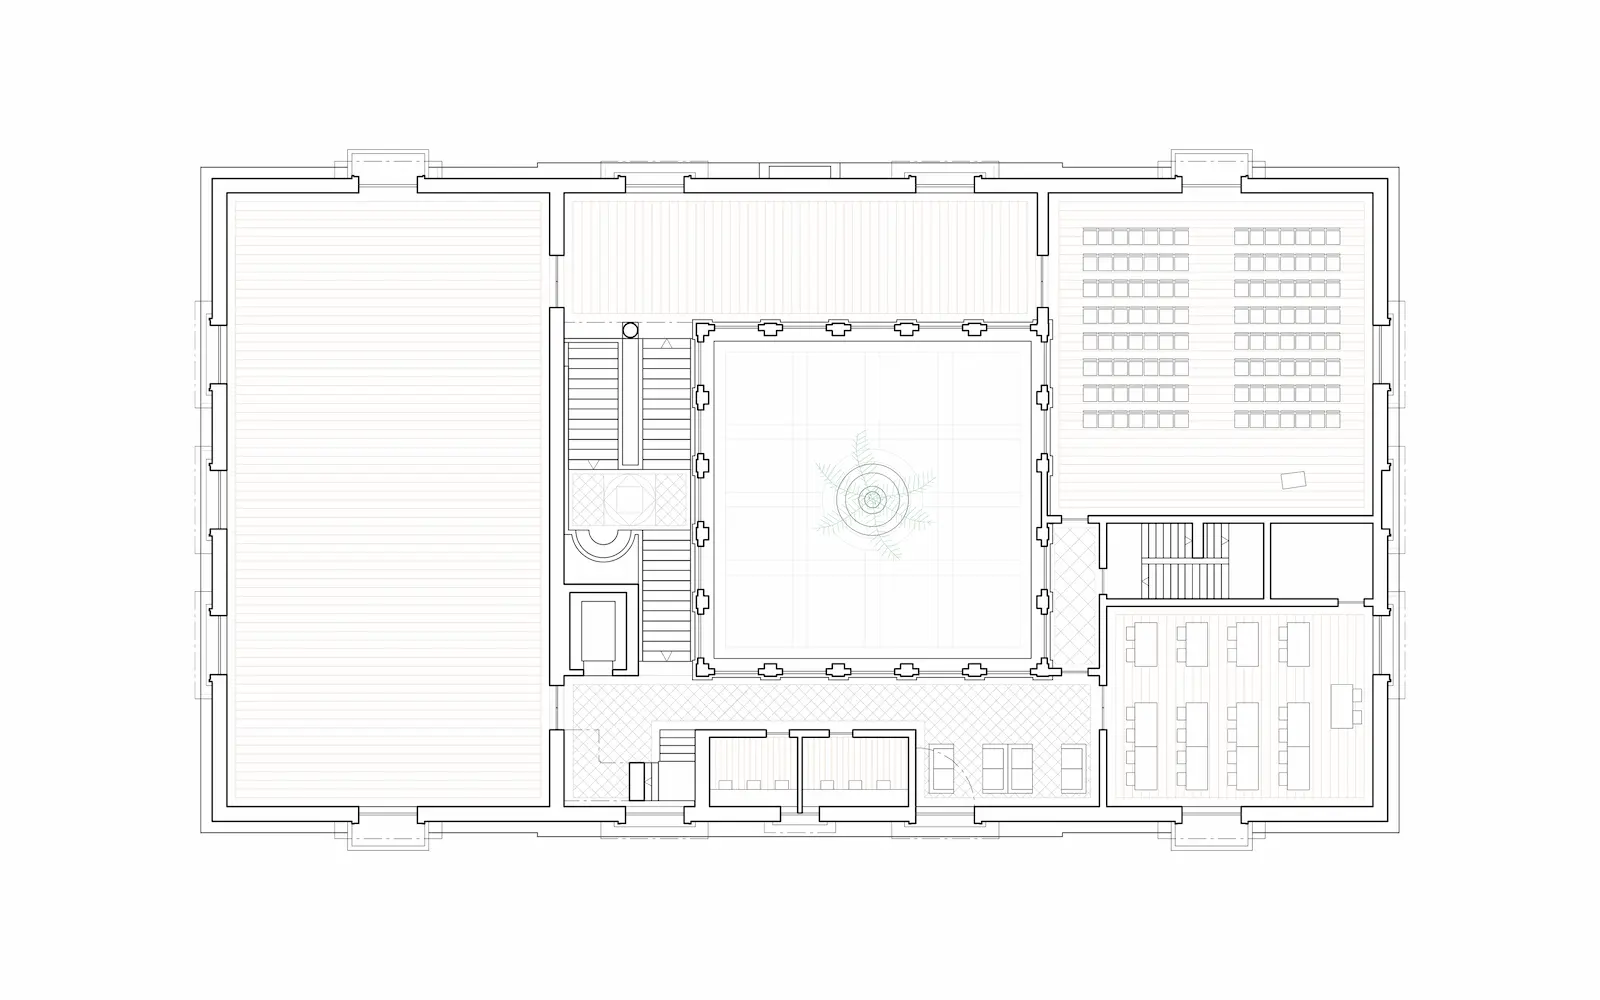 First floor plan of museum